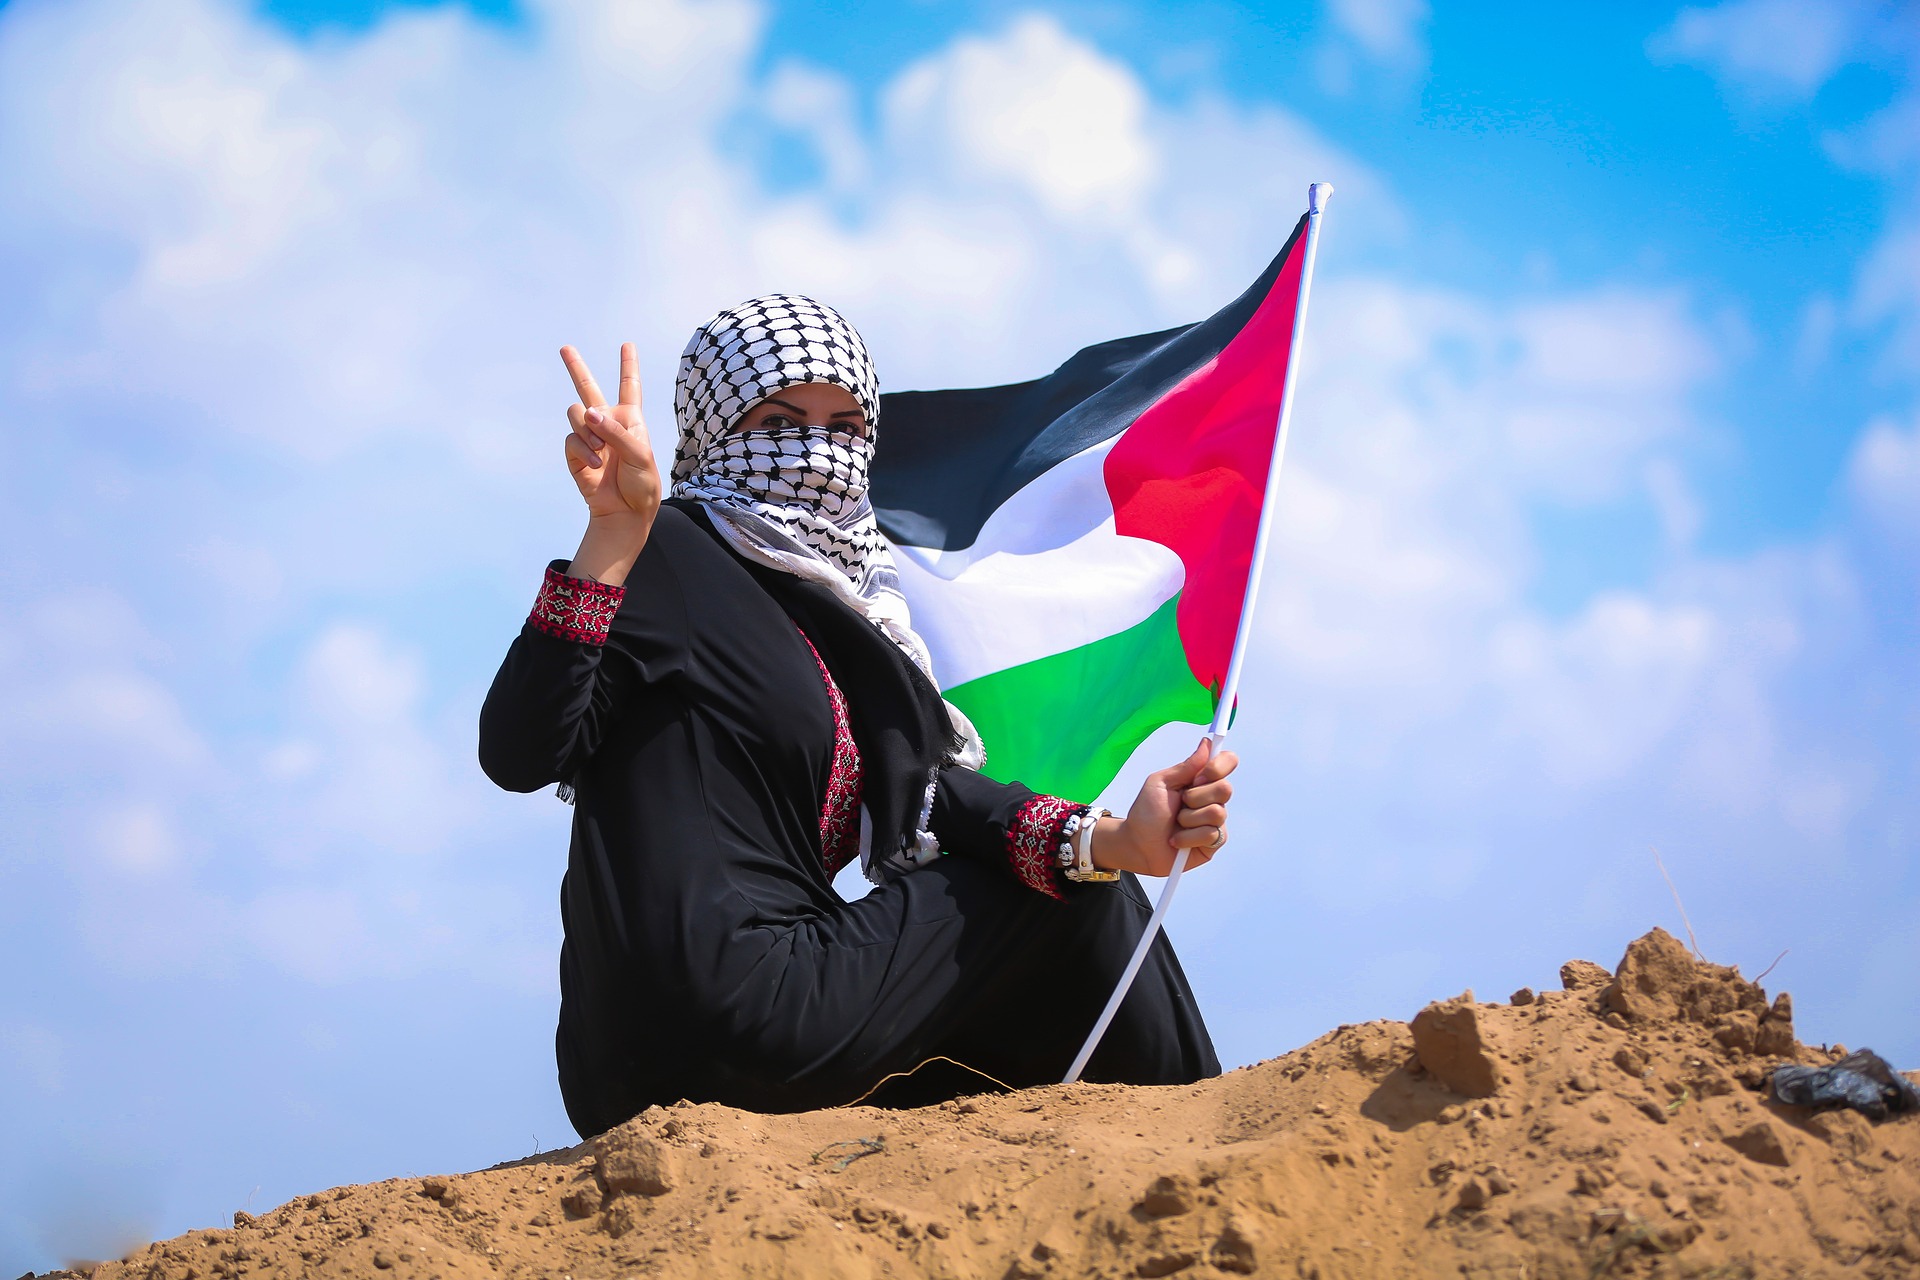 “É preciso palestinar”: o conflito entre árabes e judeus e a longa busca pela paz no Oriente Médio